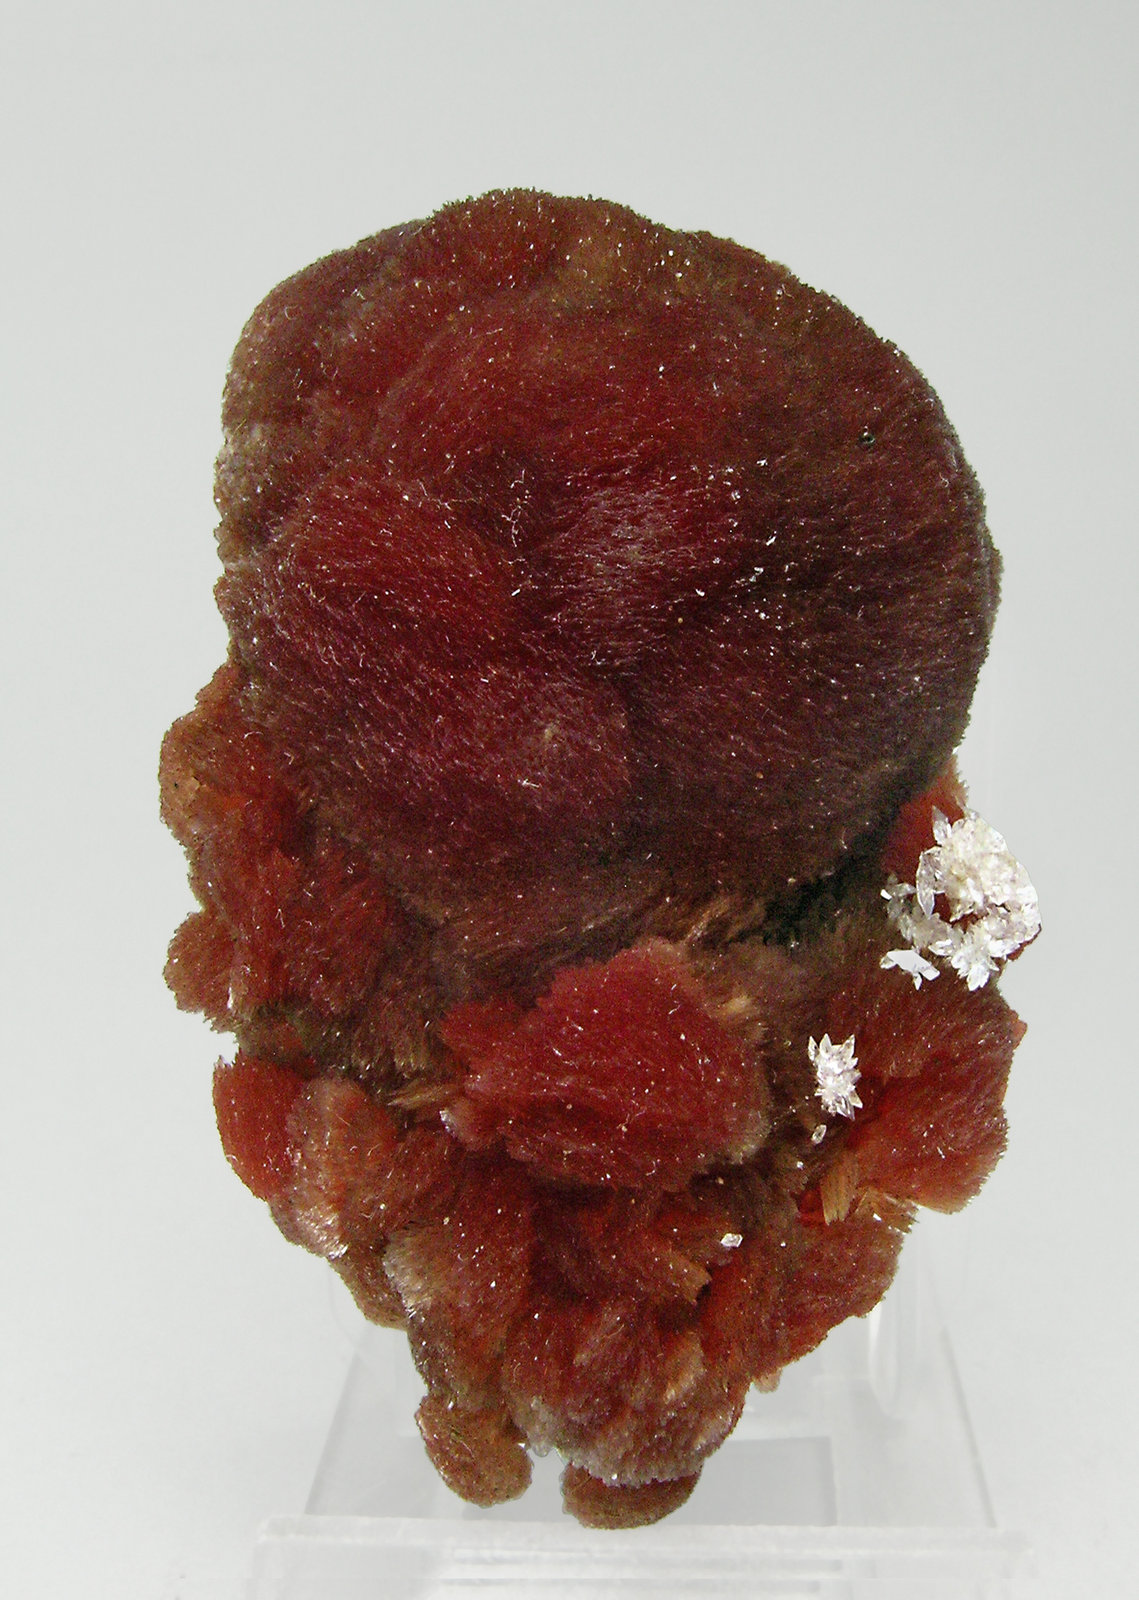 specimens/s_imagesQ5/Inesite-TR50Q5f.jpg